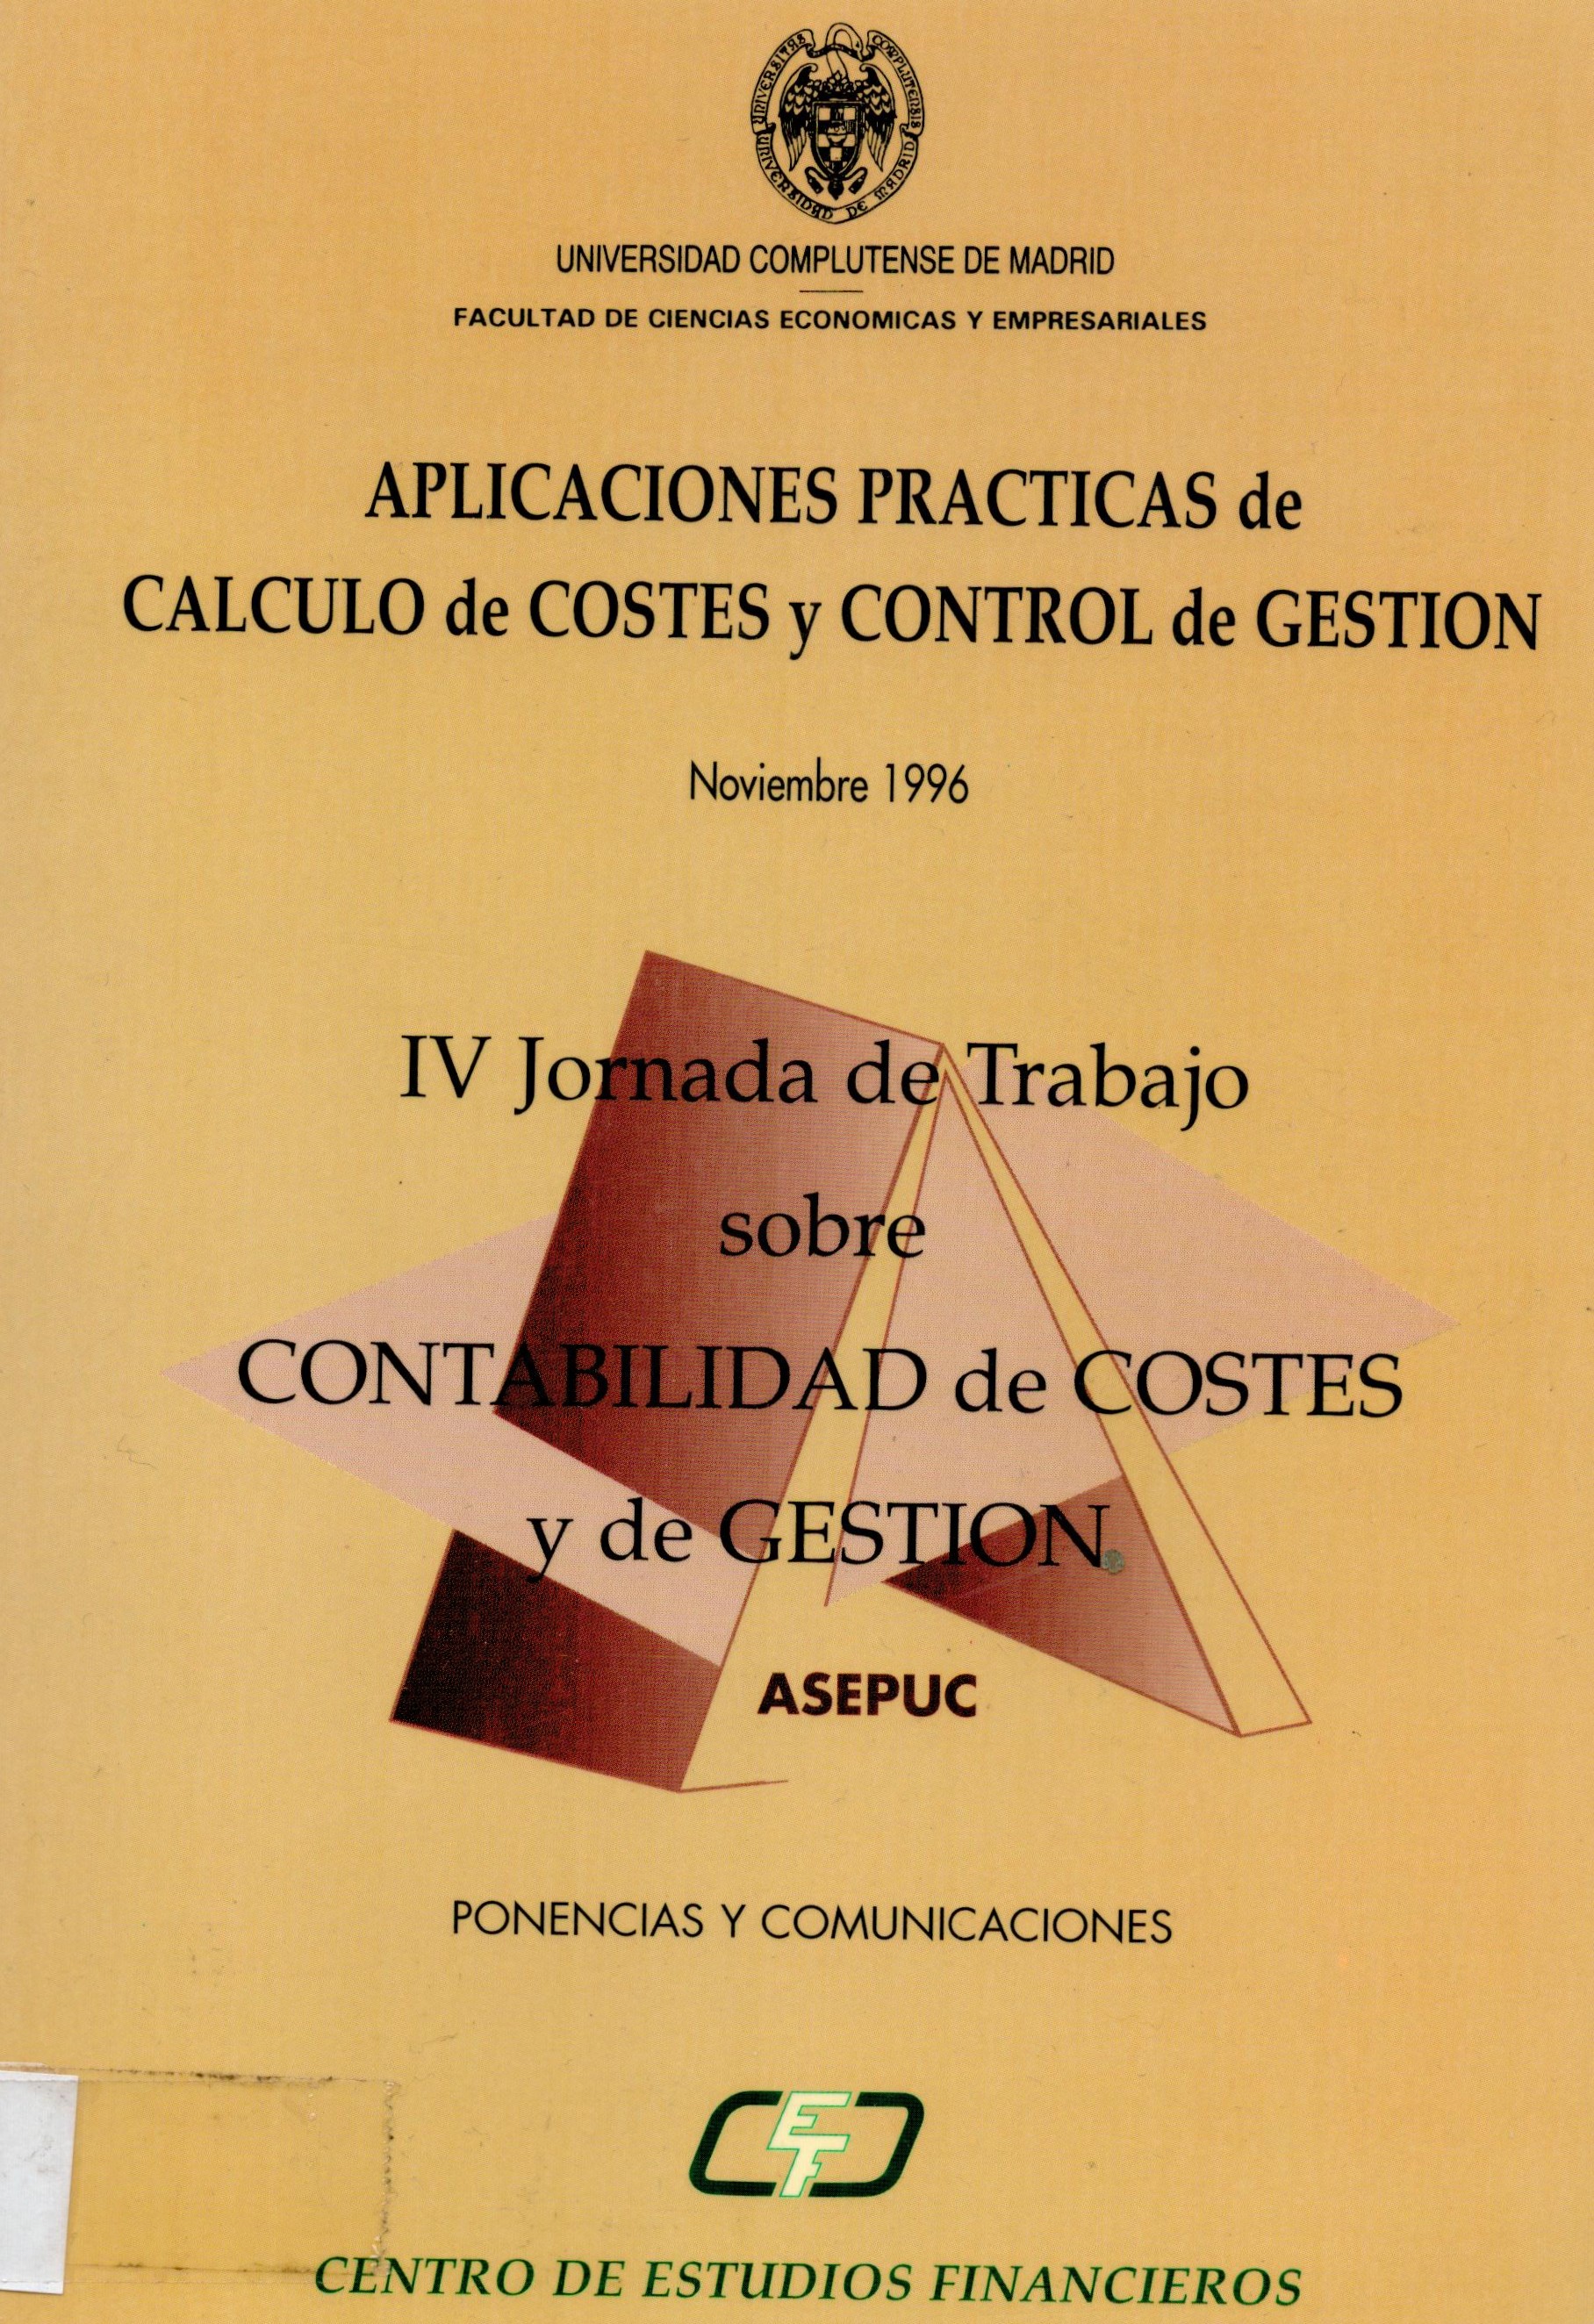 Imagen de portada del libro Aplicaciones prácticas de cálculo de costes y control de gestión